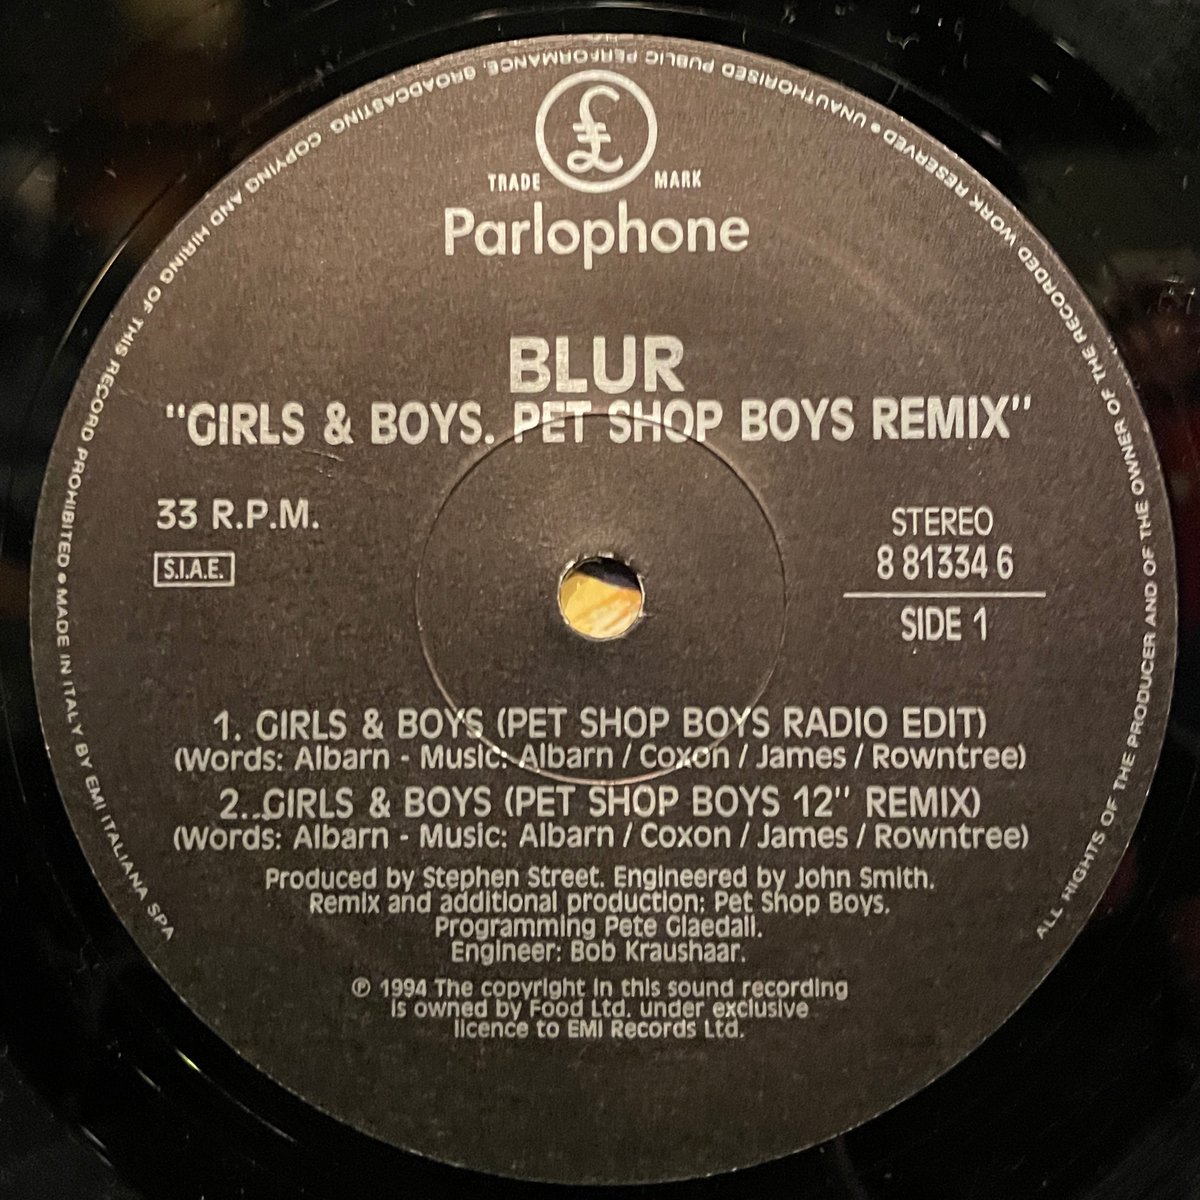 ほな12いこか
BLUR / Girls & Boys (Pet Shop Boys Remix) [’94 ITA. Parlophone --- 8 81334 6]
#blur #GirlsAndBoys #StephenStreet #parklife #PetShopBoys #vinylbar #musicbar #レコードバー #mhc20082023
youtube.com/watch?v=BA5v3W…